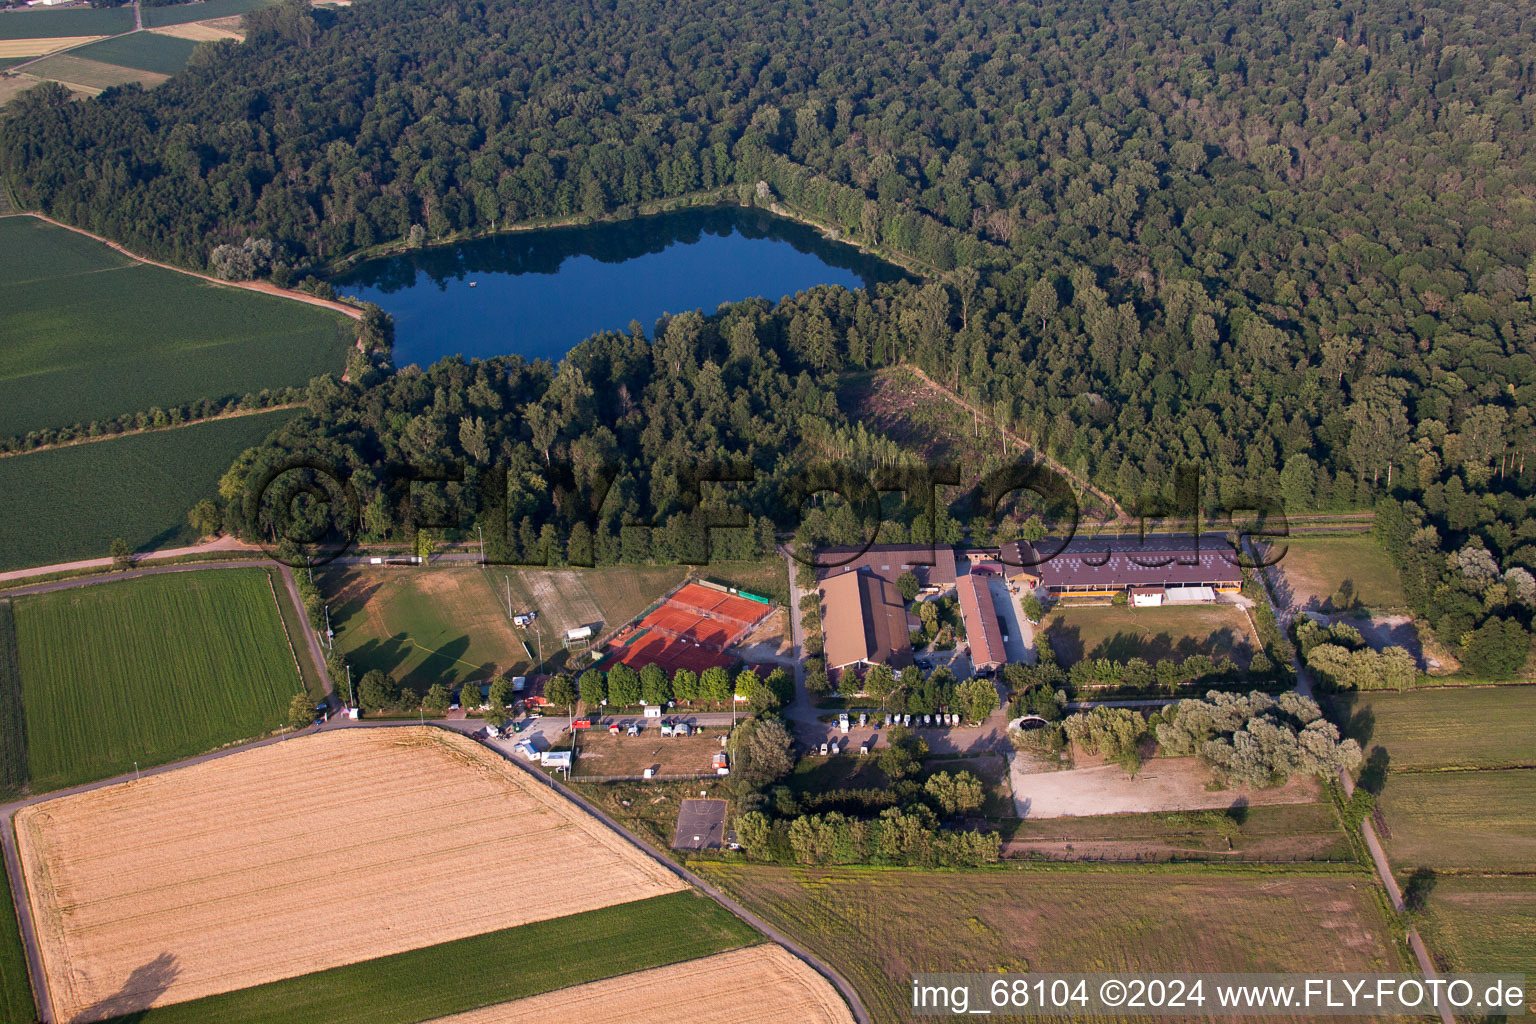 Vue aérienne de Centre équestre - centres équestres - écuries du Reitverein Lahr eV dans le district de Kippenheimweiler/Forêt Noire à Lahr dans le département Bade-Wurtemberg, Allemagne